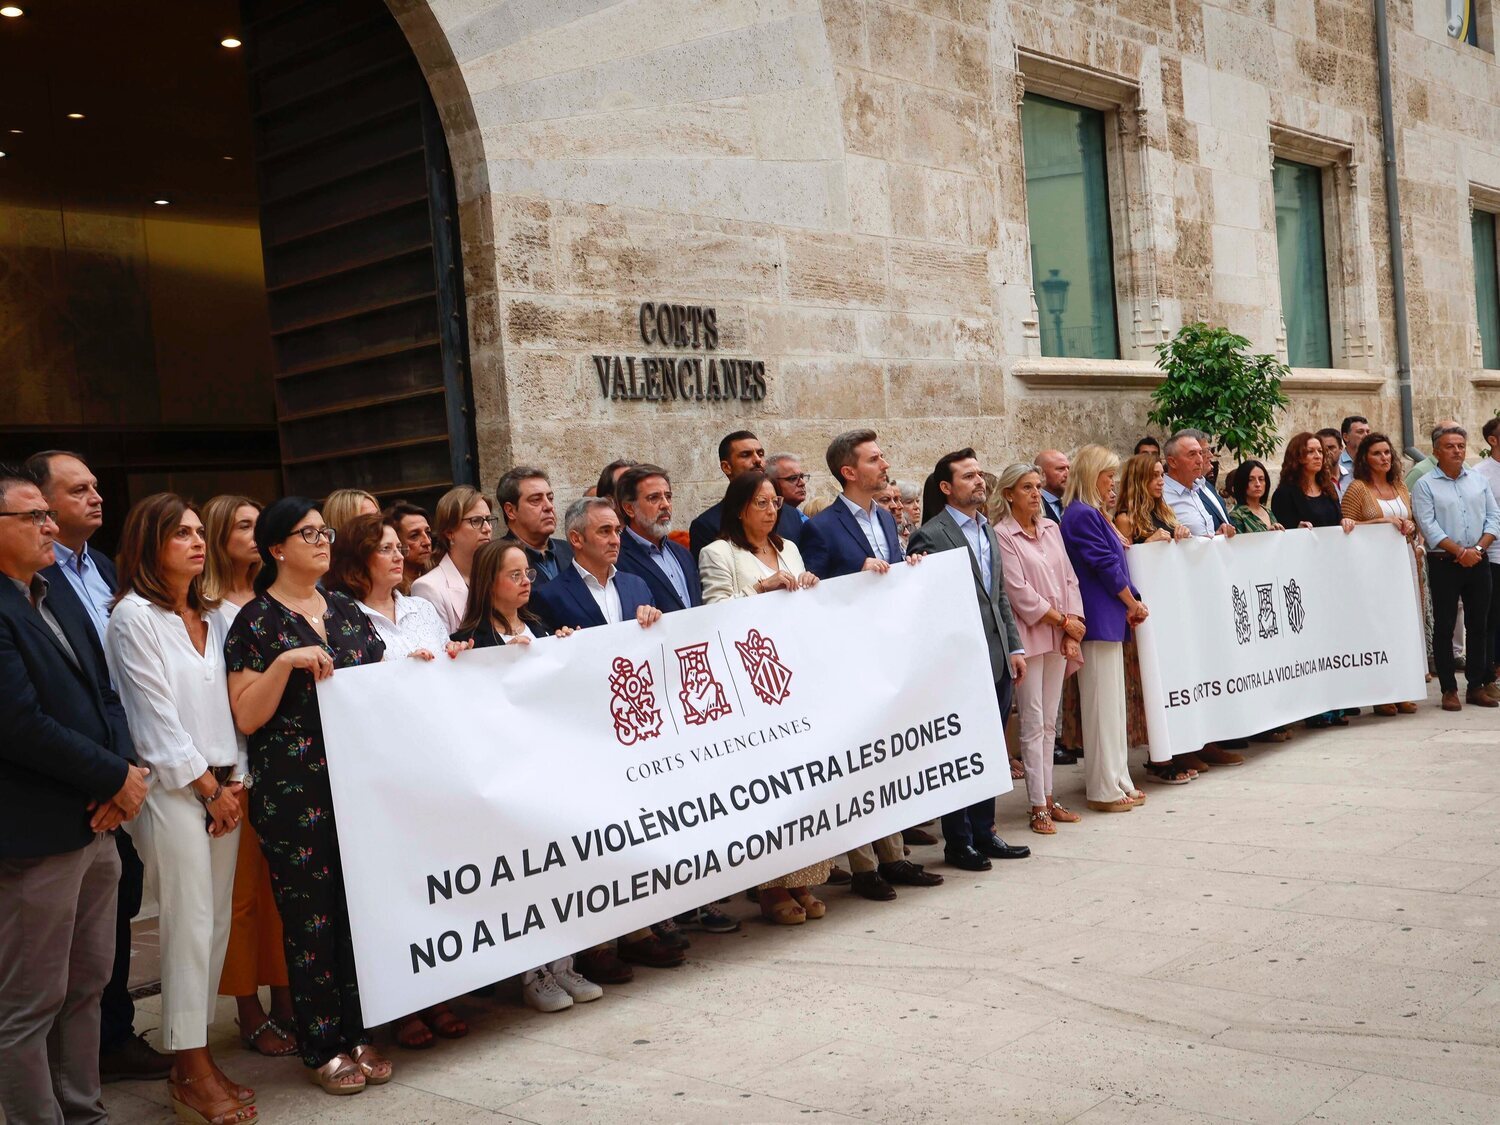 Guerra de pancartas en las condenas a la violencia de género en Valencia